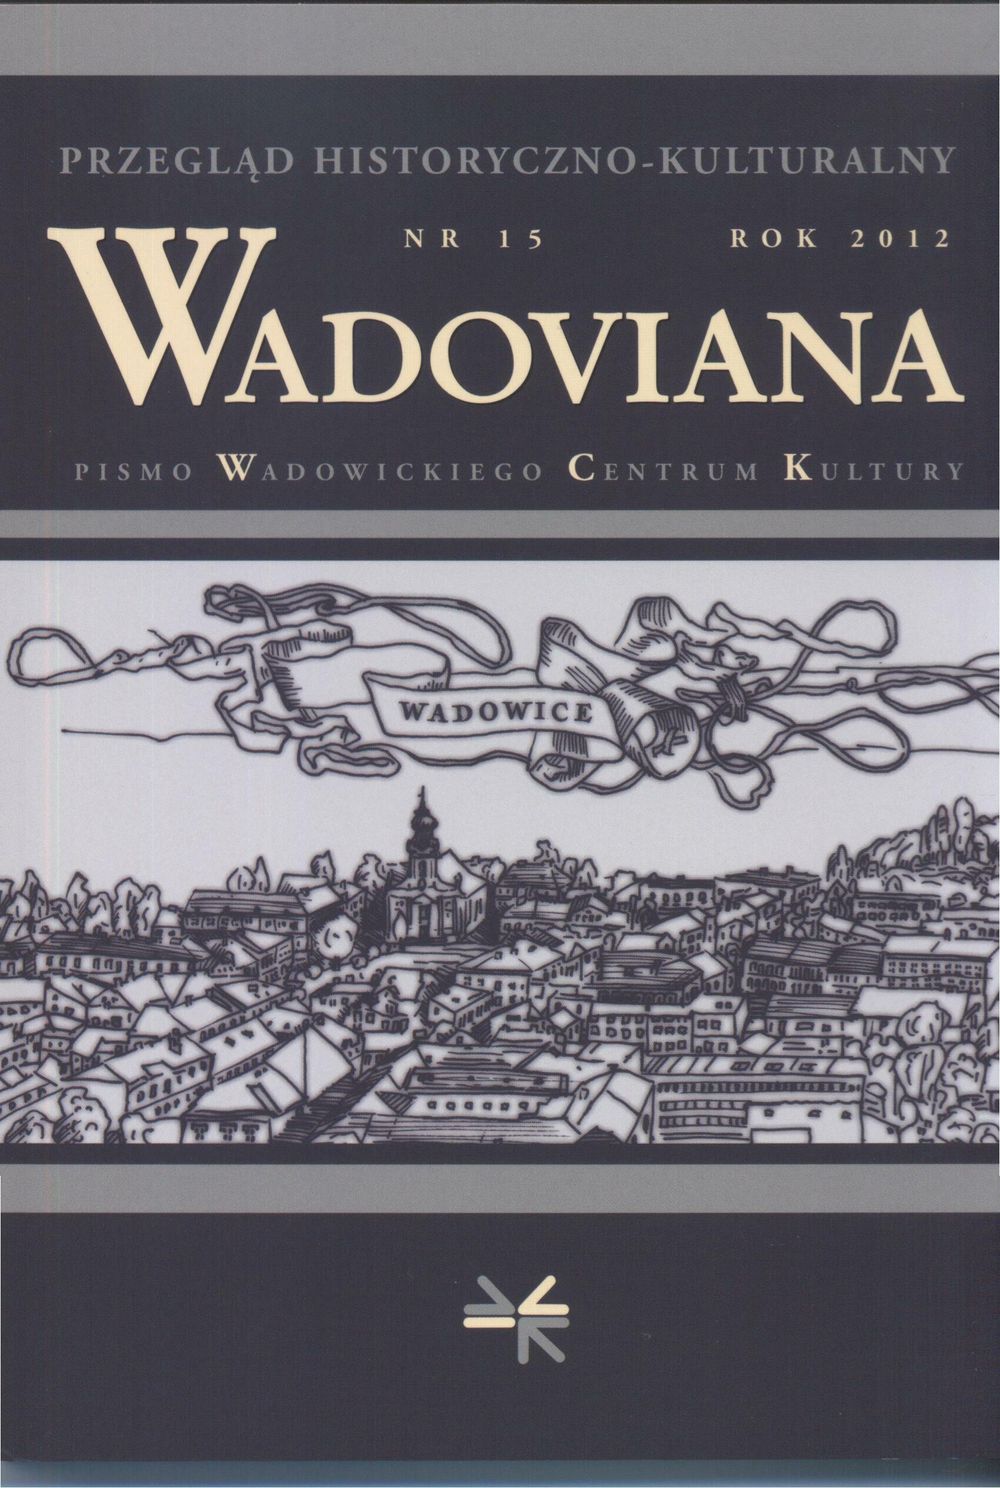 Exhibitions "Wadowice Karola Wojtyły" Cover Image